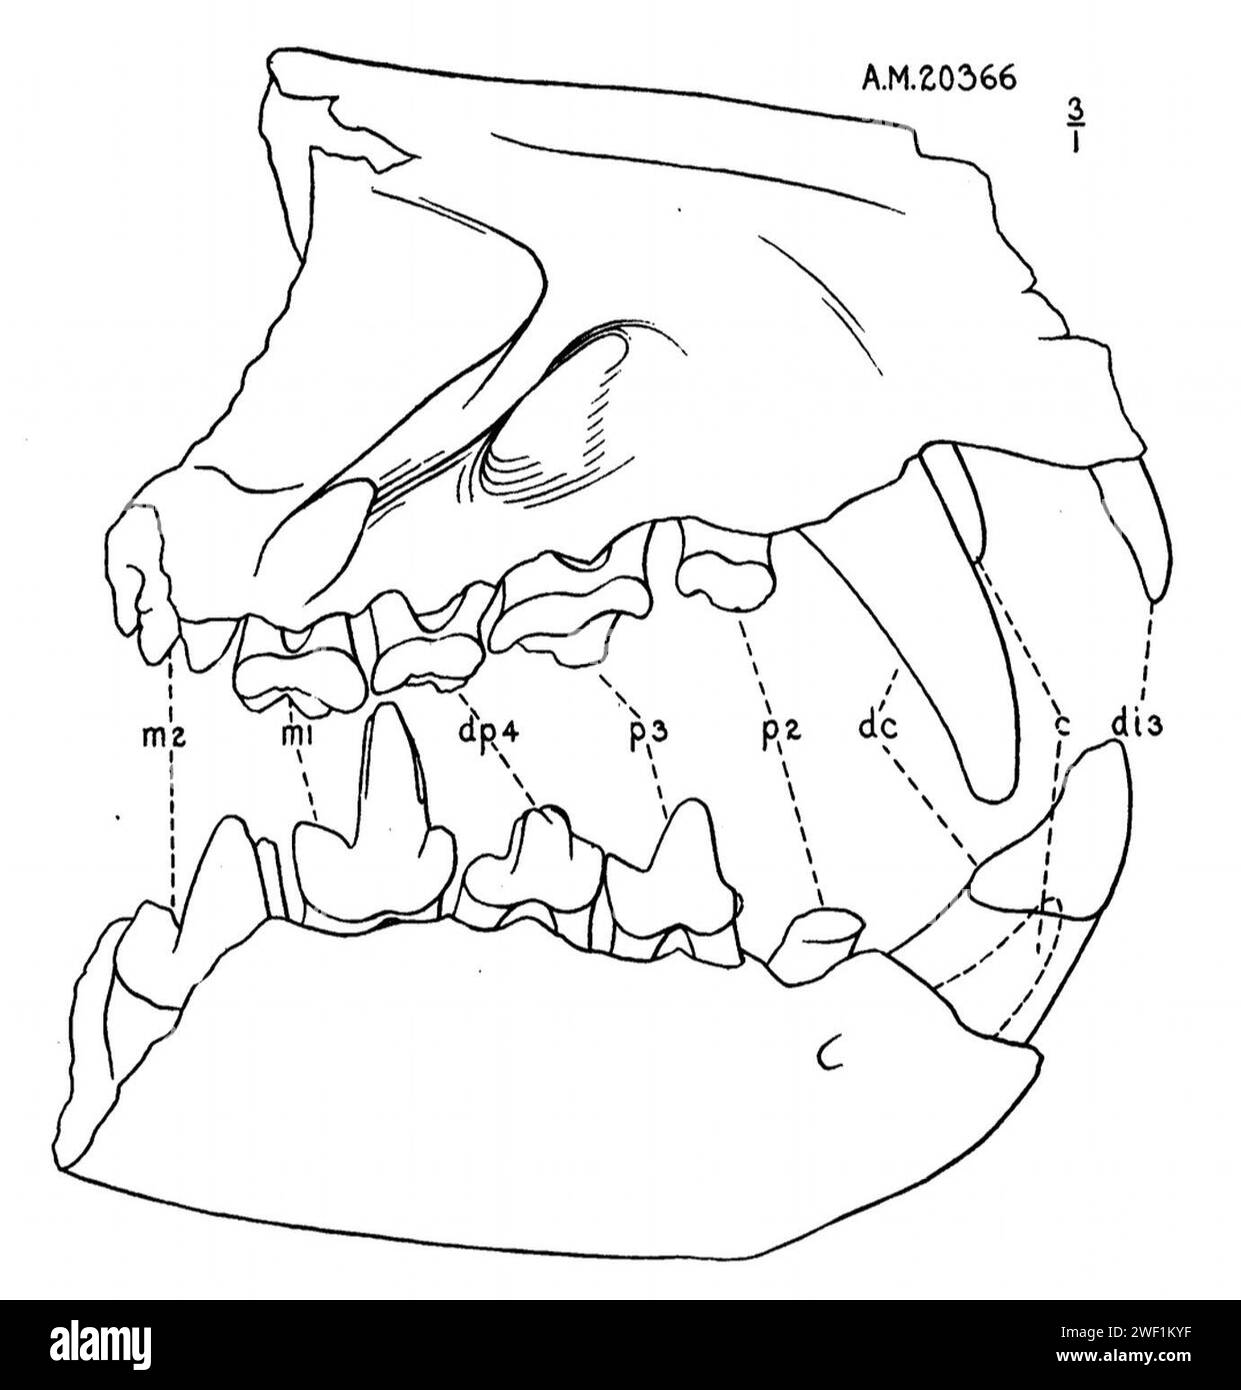 Ardynictis davanti al cranio. Foto Stock